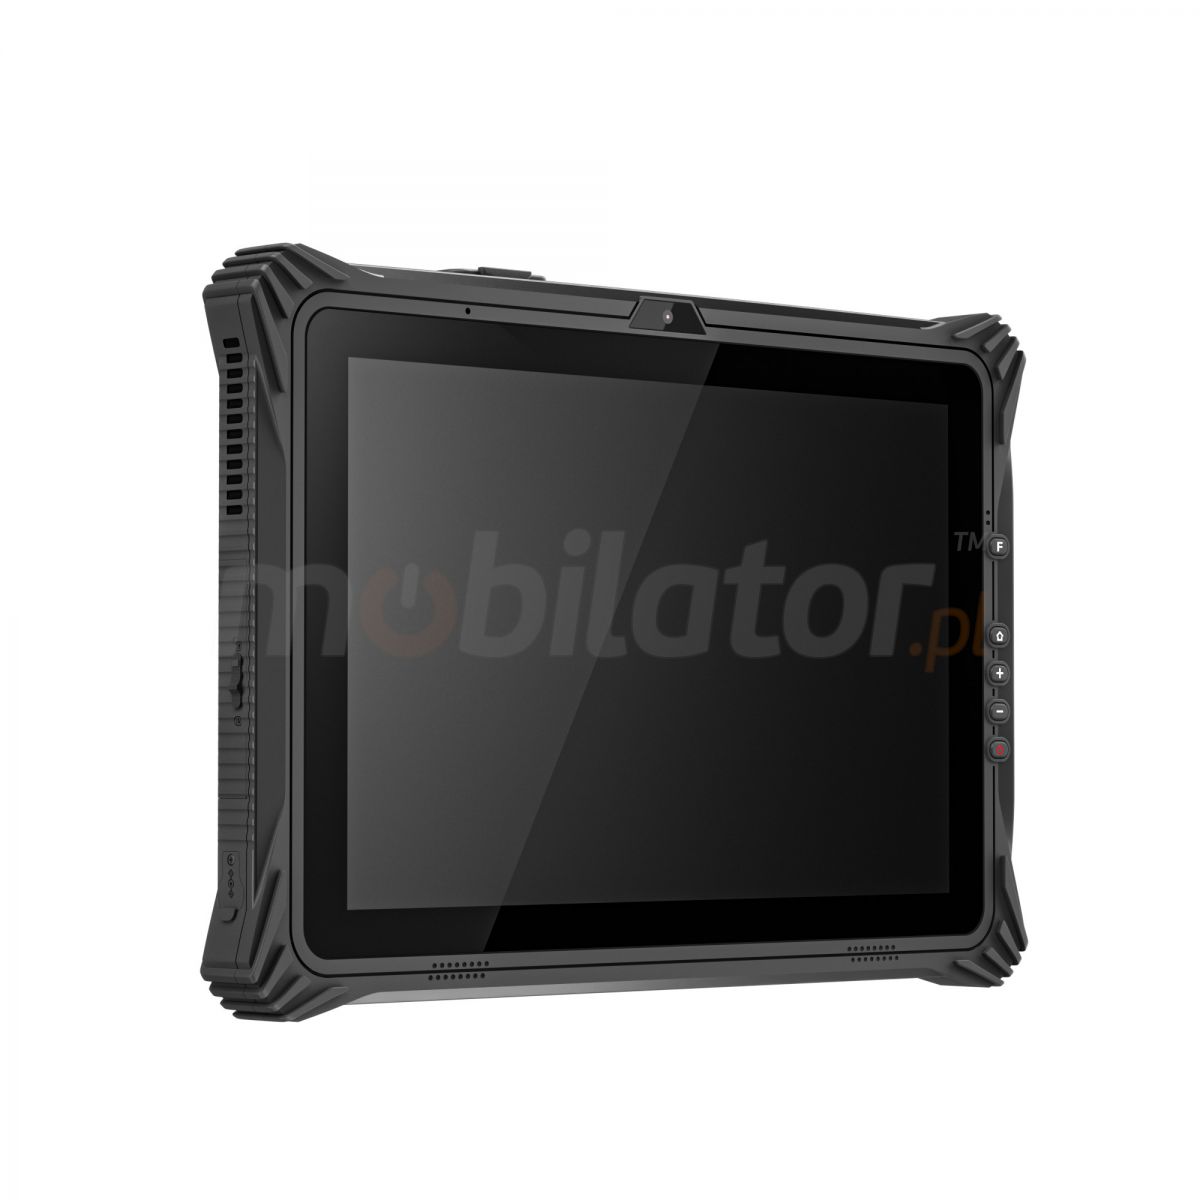 Emdoor I20U v.4 - Odporny na upadki dwunastocalowy tablet z Windows 10 Home, Bluetooth 4.2, 8GB RAM, dyskiem 128GB, NFC  i 4G 